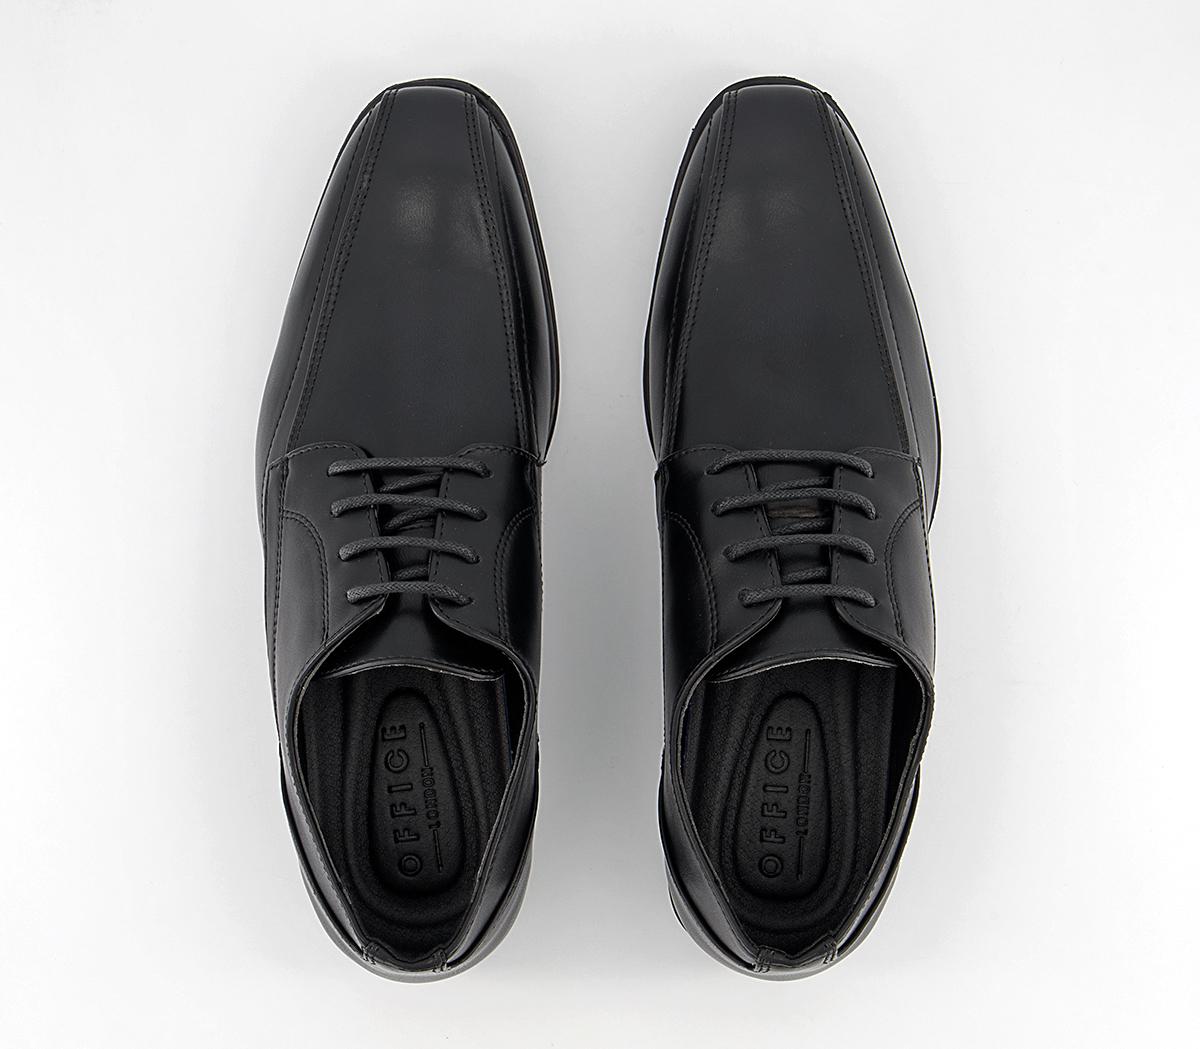 OFFICE Molton Tramline Derby Shoes Black - Men’s Smart Shoes